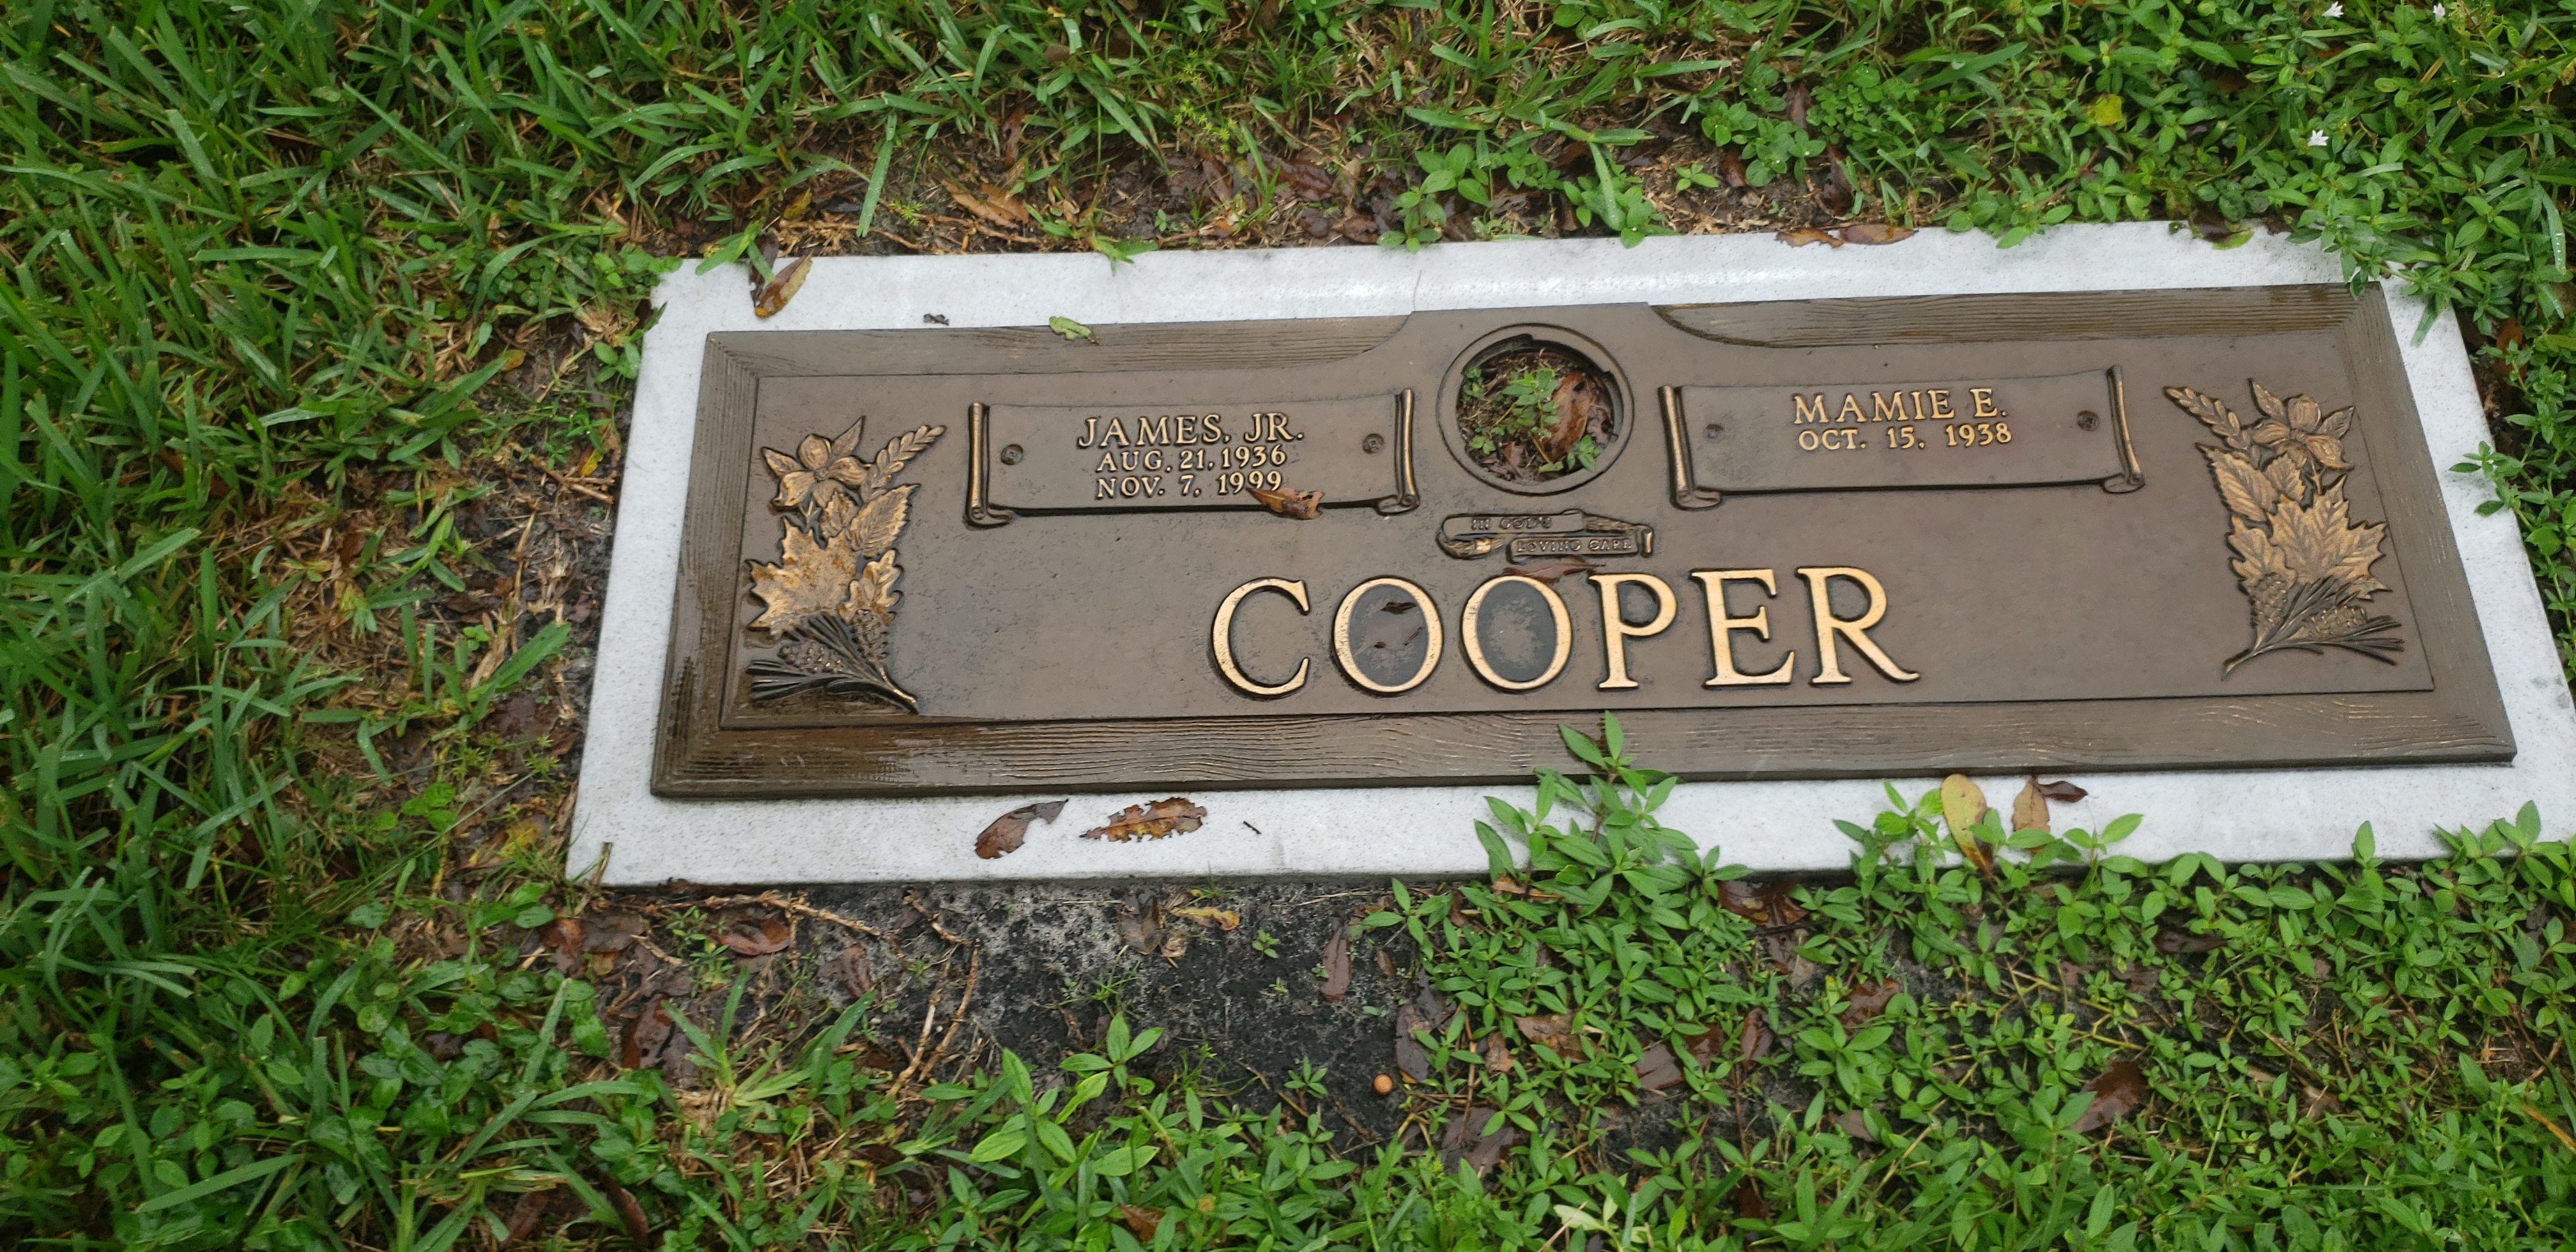 James Cooper, Jr